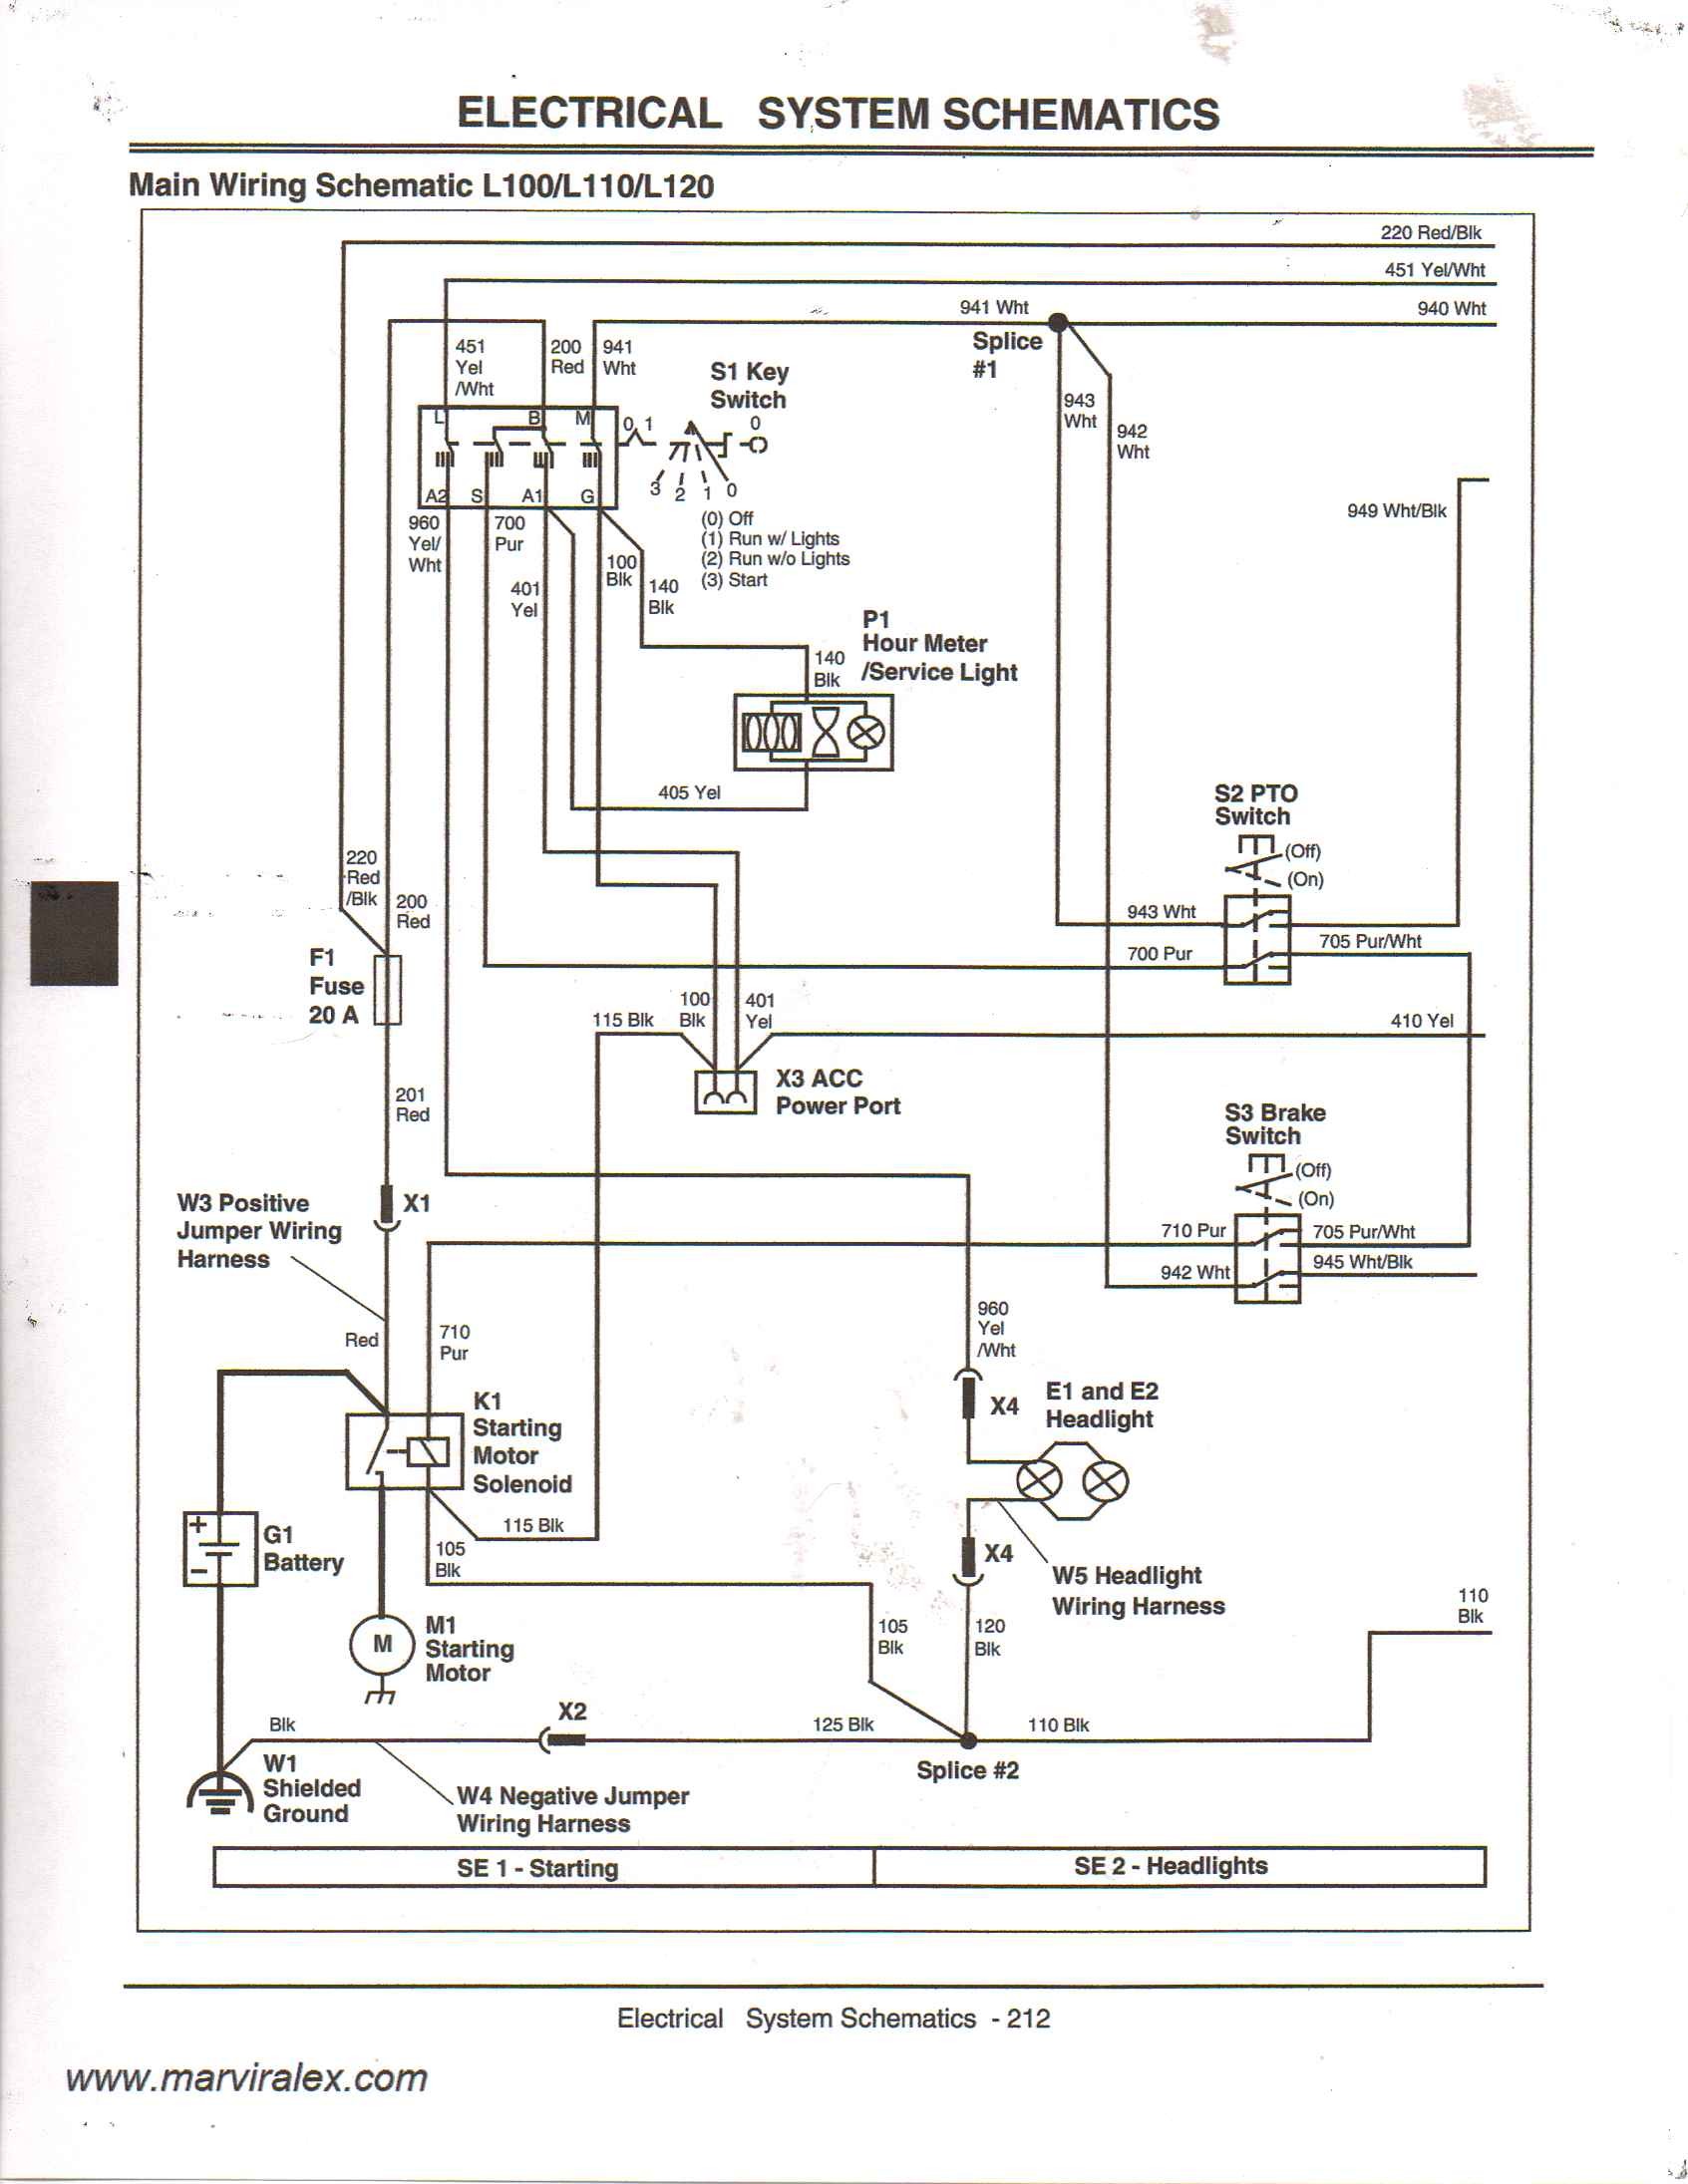 John Deere Ignition Switch Wiring Schematics 4 X 2 Sy 4760] L110 Wiring Diagram Of John Deere Ignition Switch Wiring Schematics 4 X 2